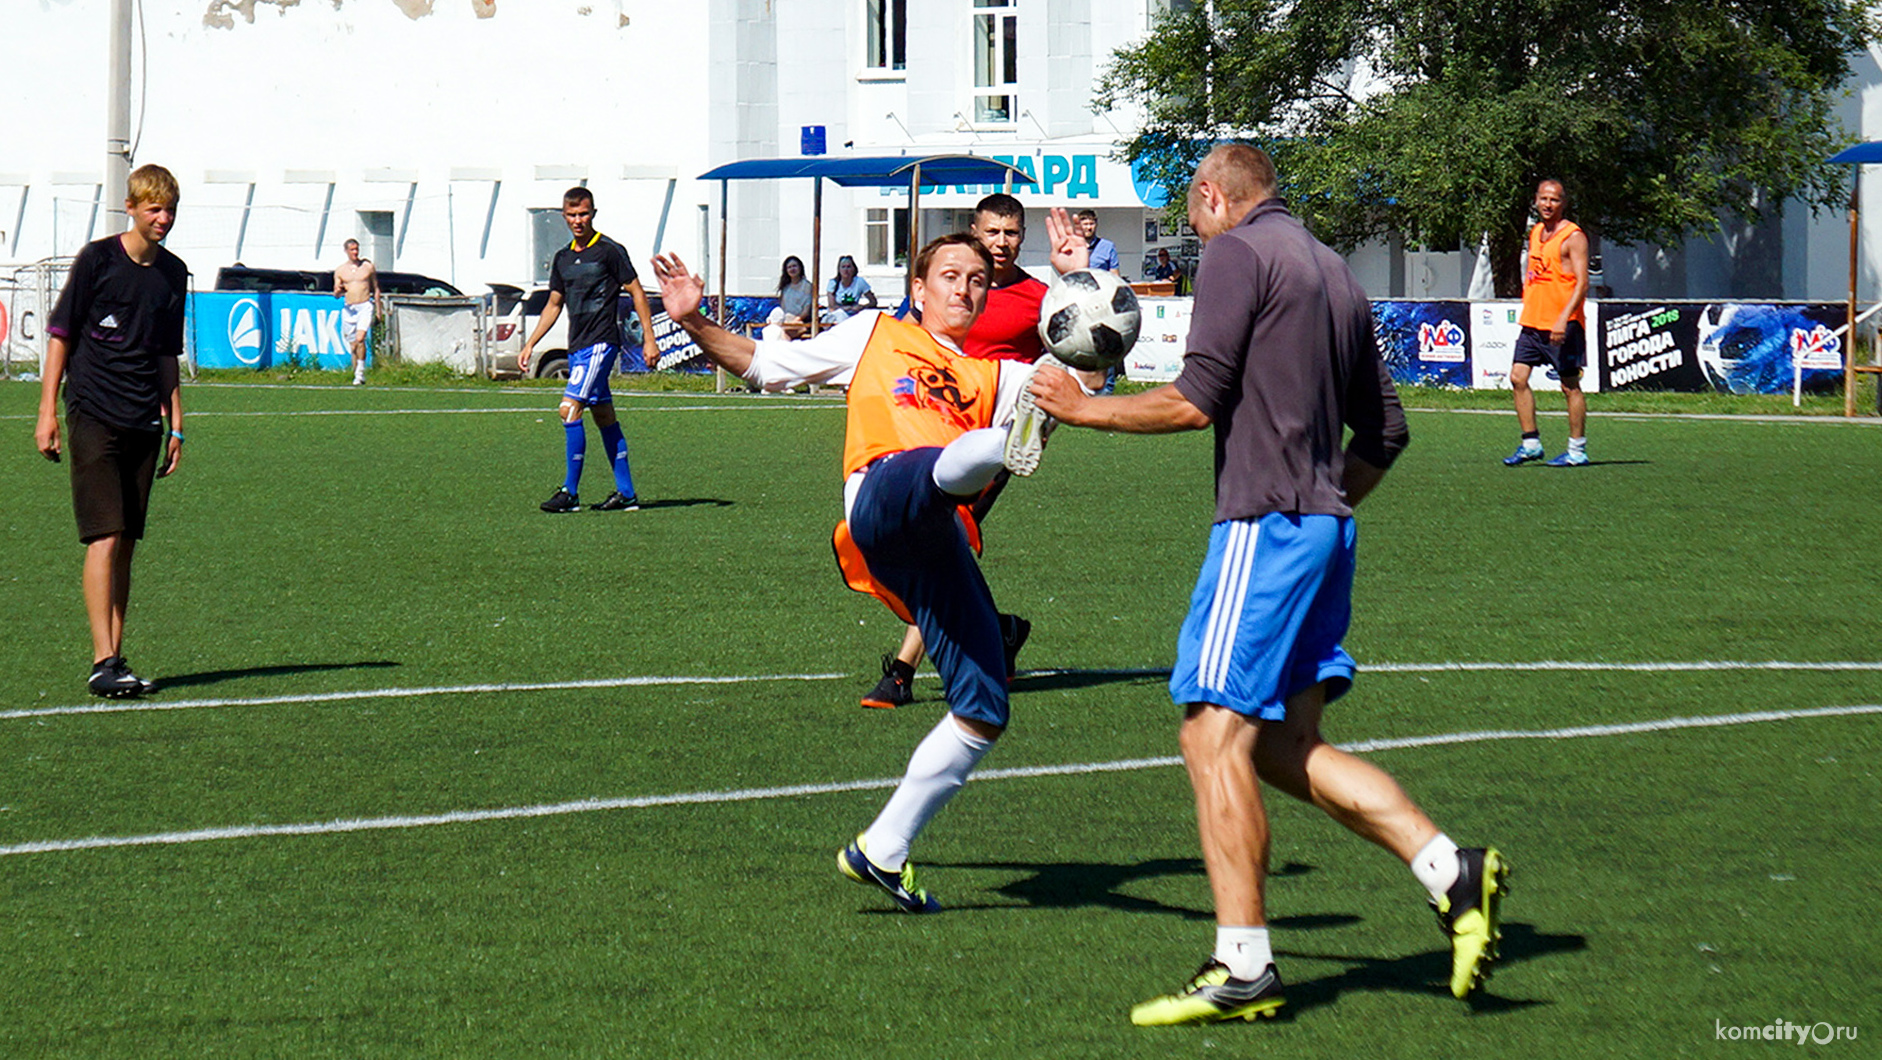 В Комсомольске-на-Амуре определены финалисты летнего турнира по дворовому футболу 